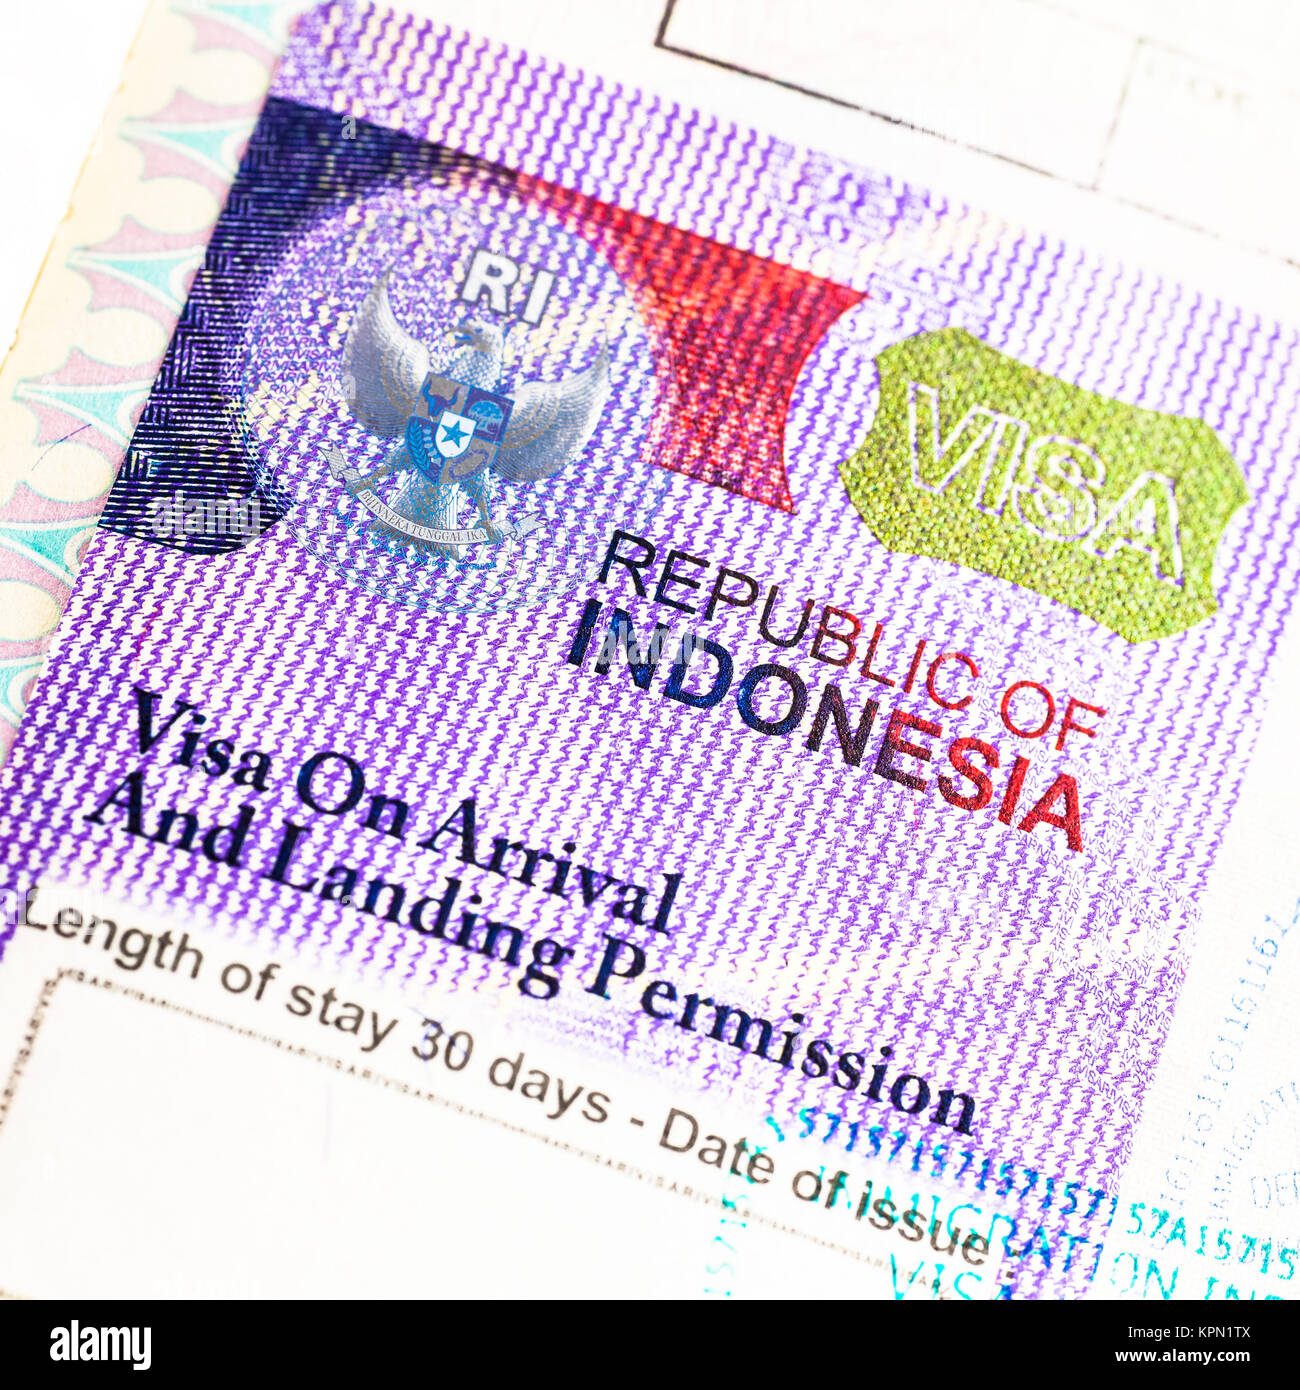 Visa indonesia Banque de photographies et d'images à haute résolution -  Alamy